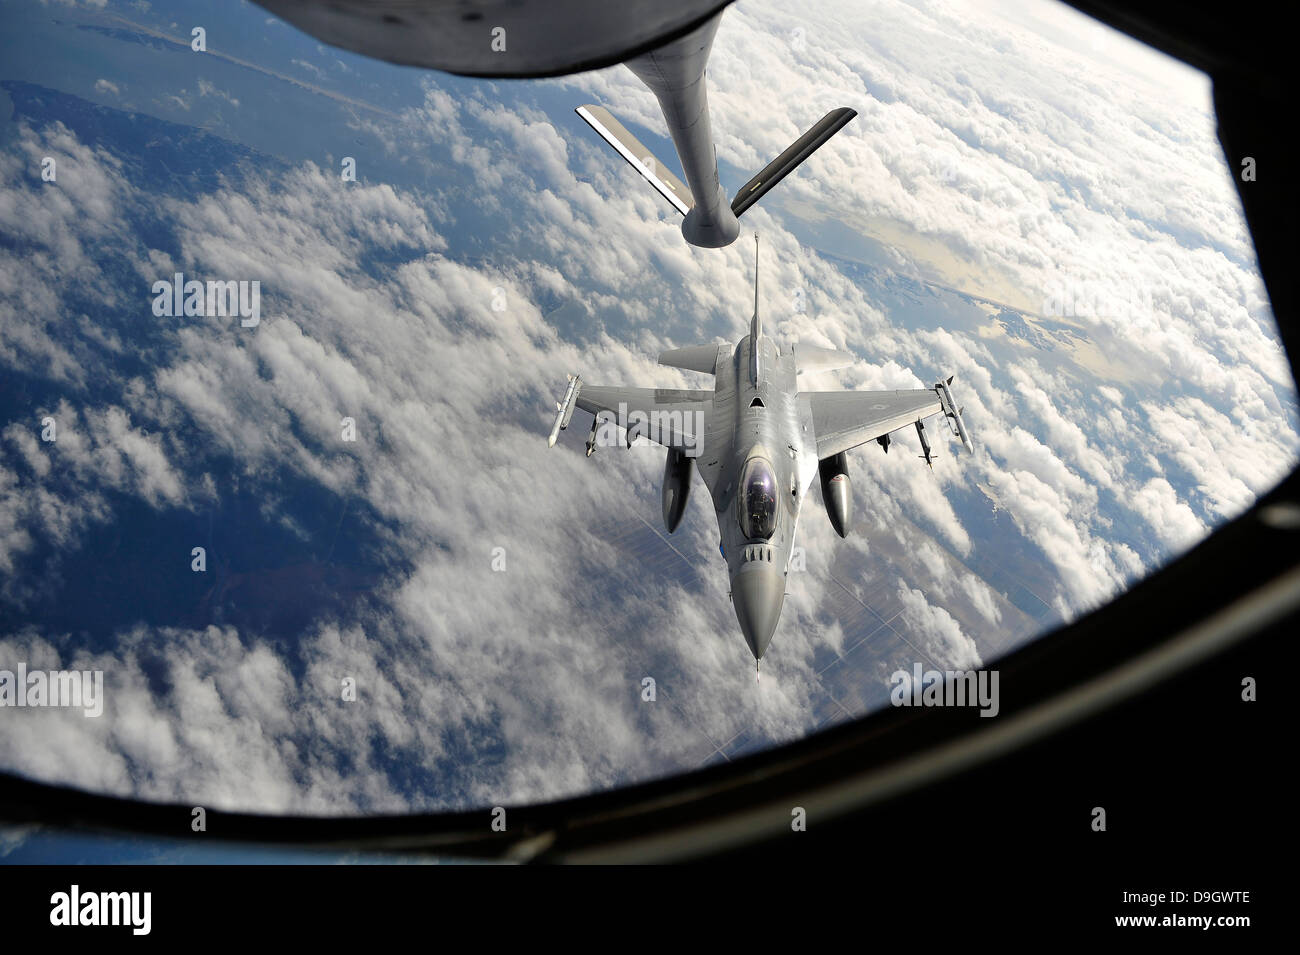 Eine f-16 Fighting Falcon bereitet für die Luftbetankung. Stockfoto